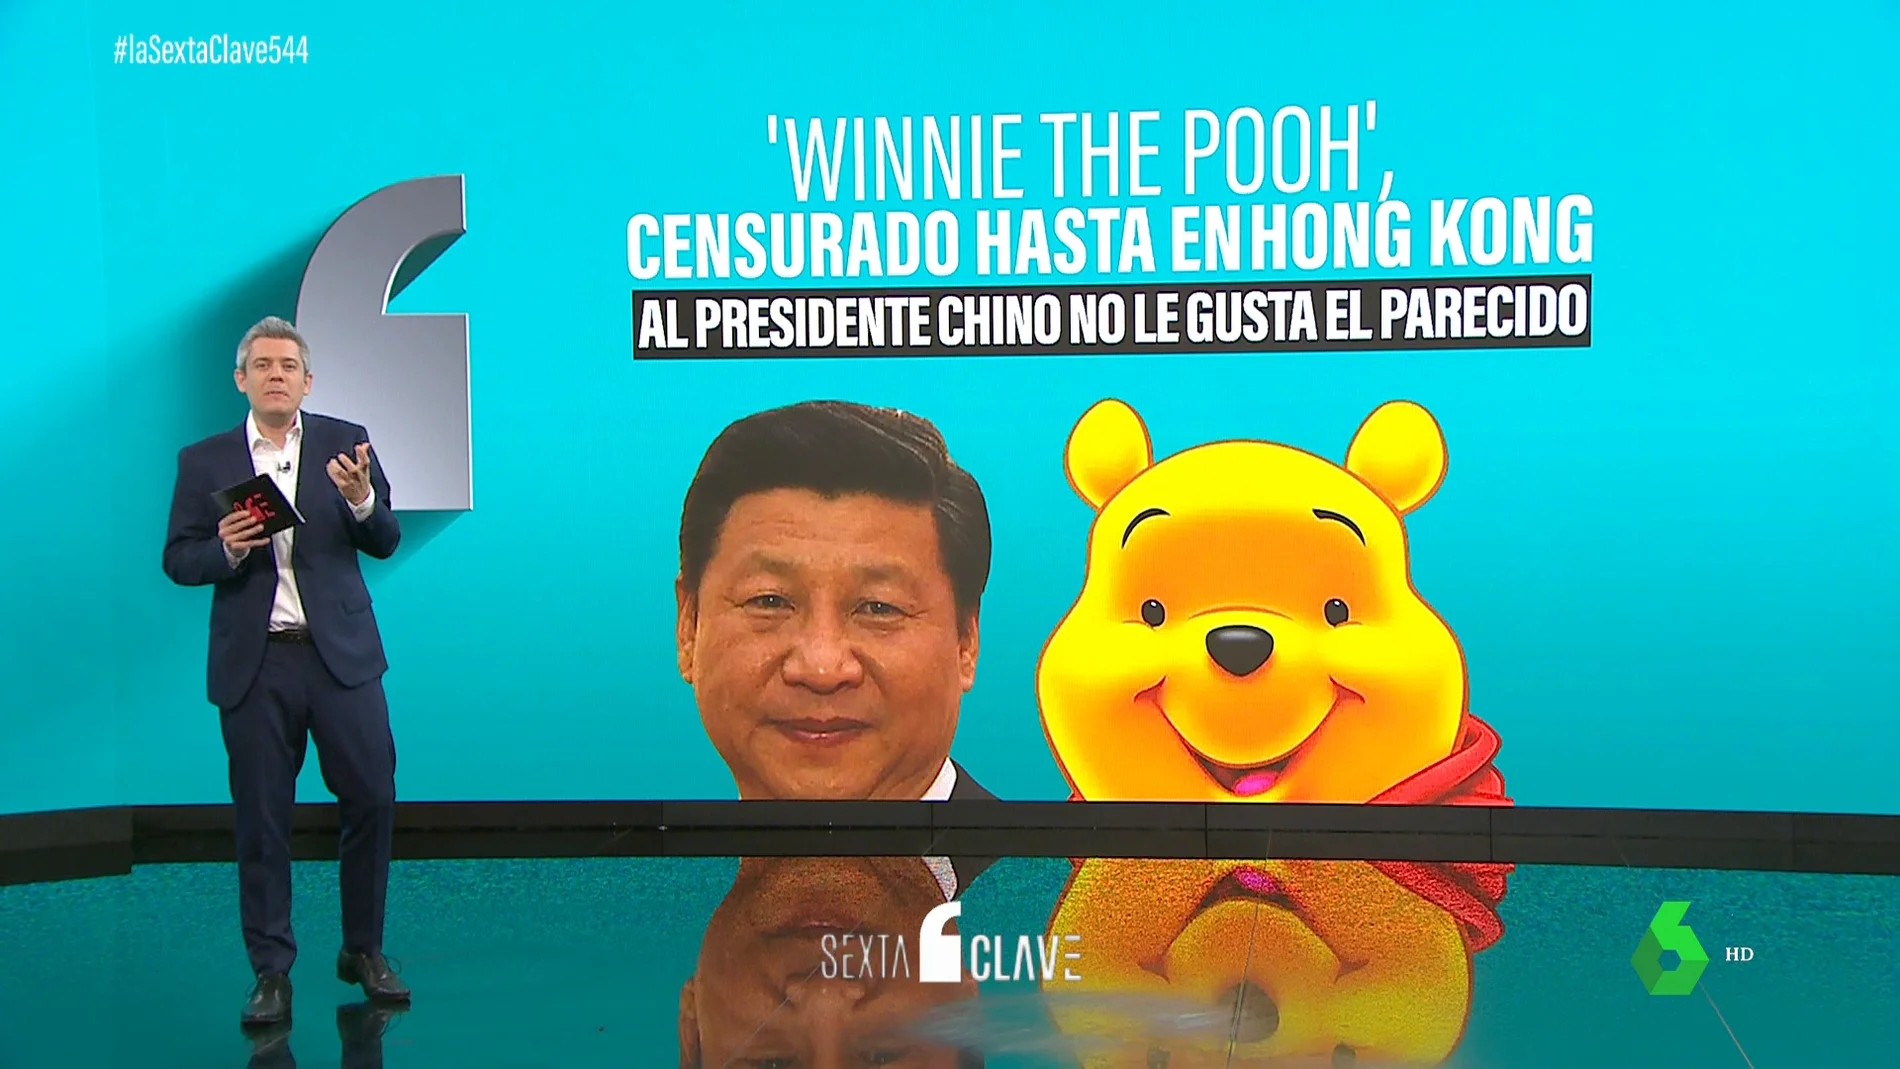 La sospechosa cancelación de Winnie the Pooh en Hong Kong: ¿tiene que ver con su parecido con Xi Jinping?